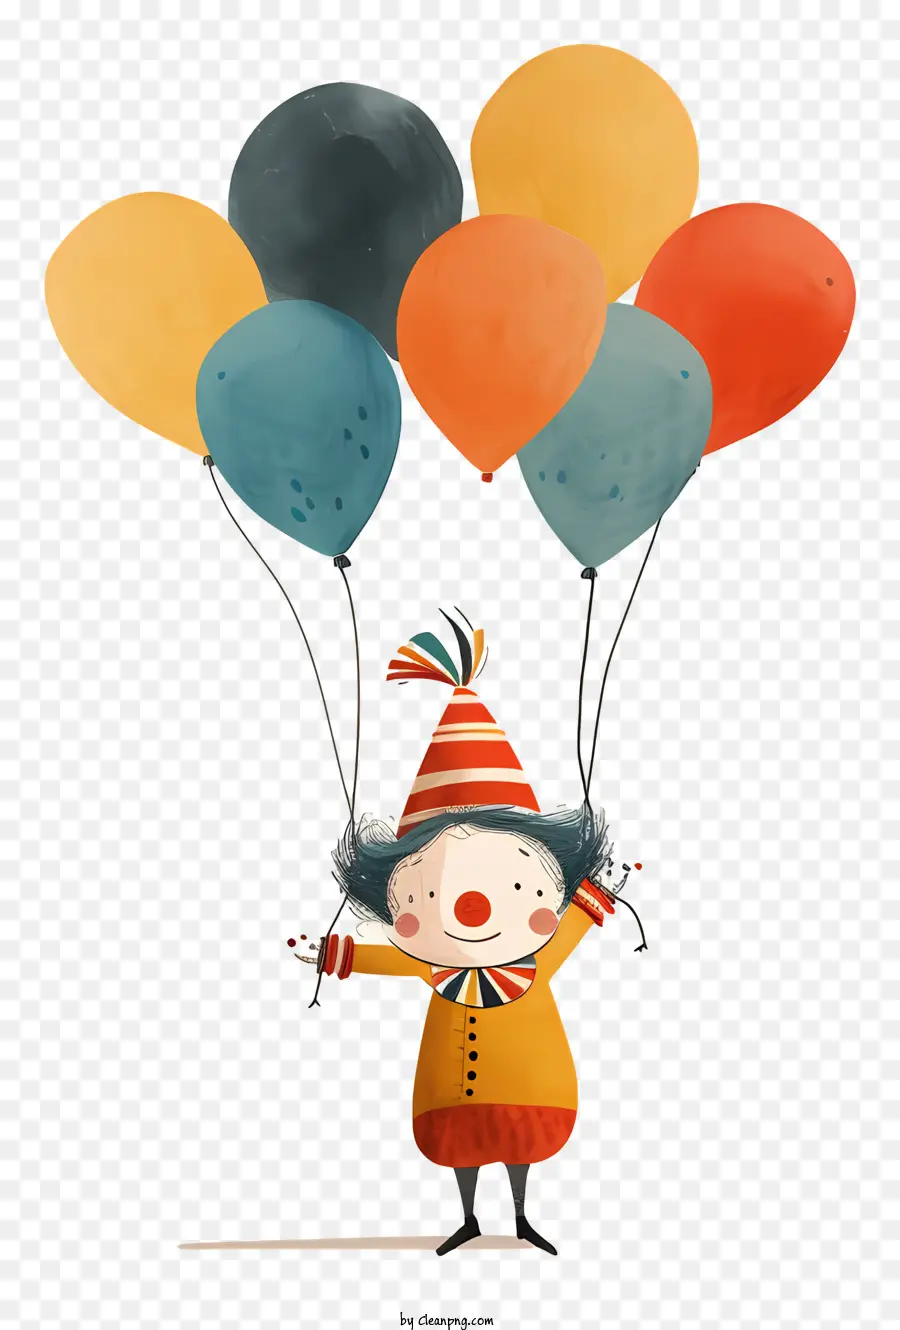 rote Luftballons - Buntes Clown mit Luftballons, festlich und verspielt